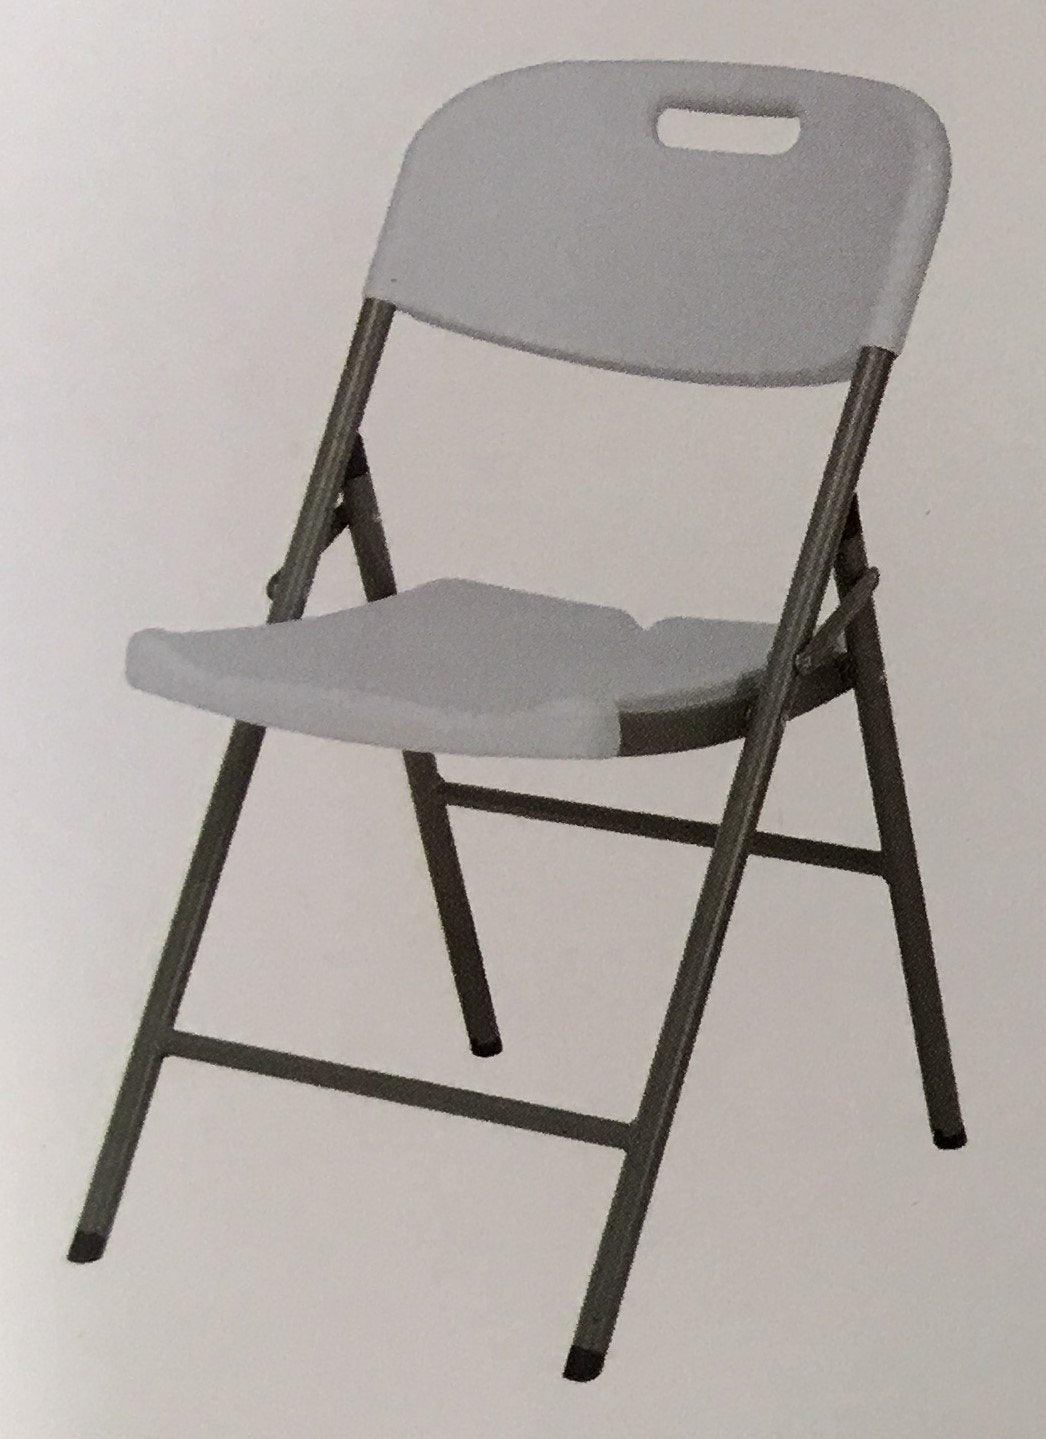 Folding Chairs & Stools - Classic Furniture Dubai UAE